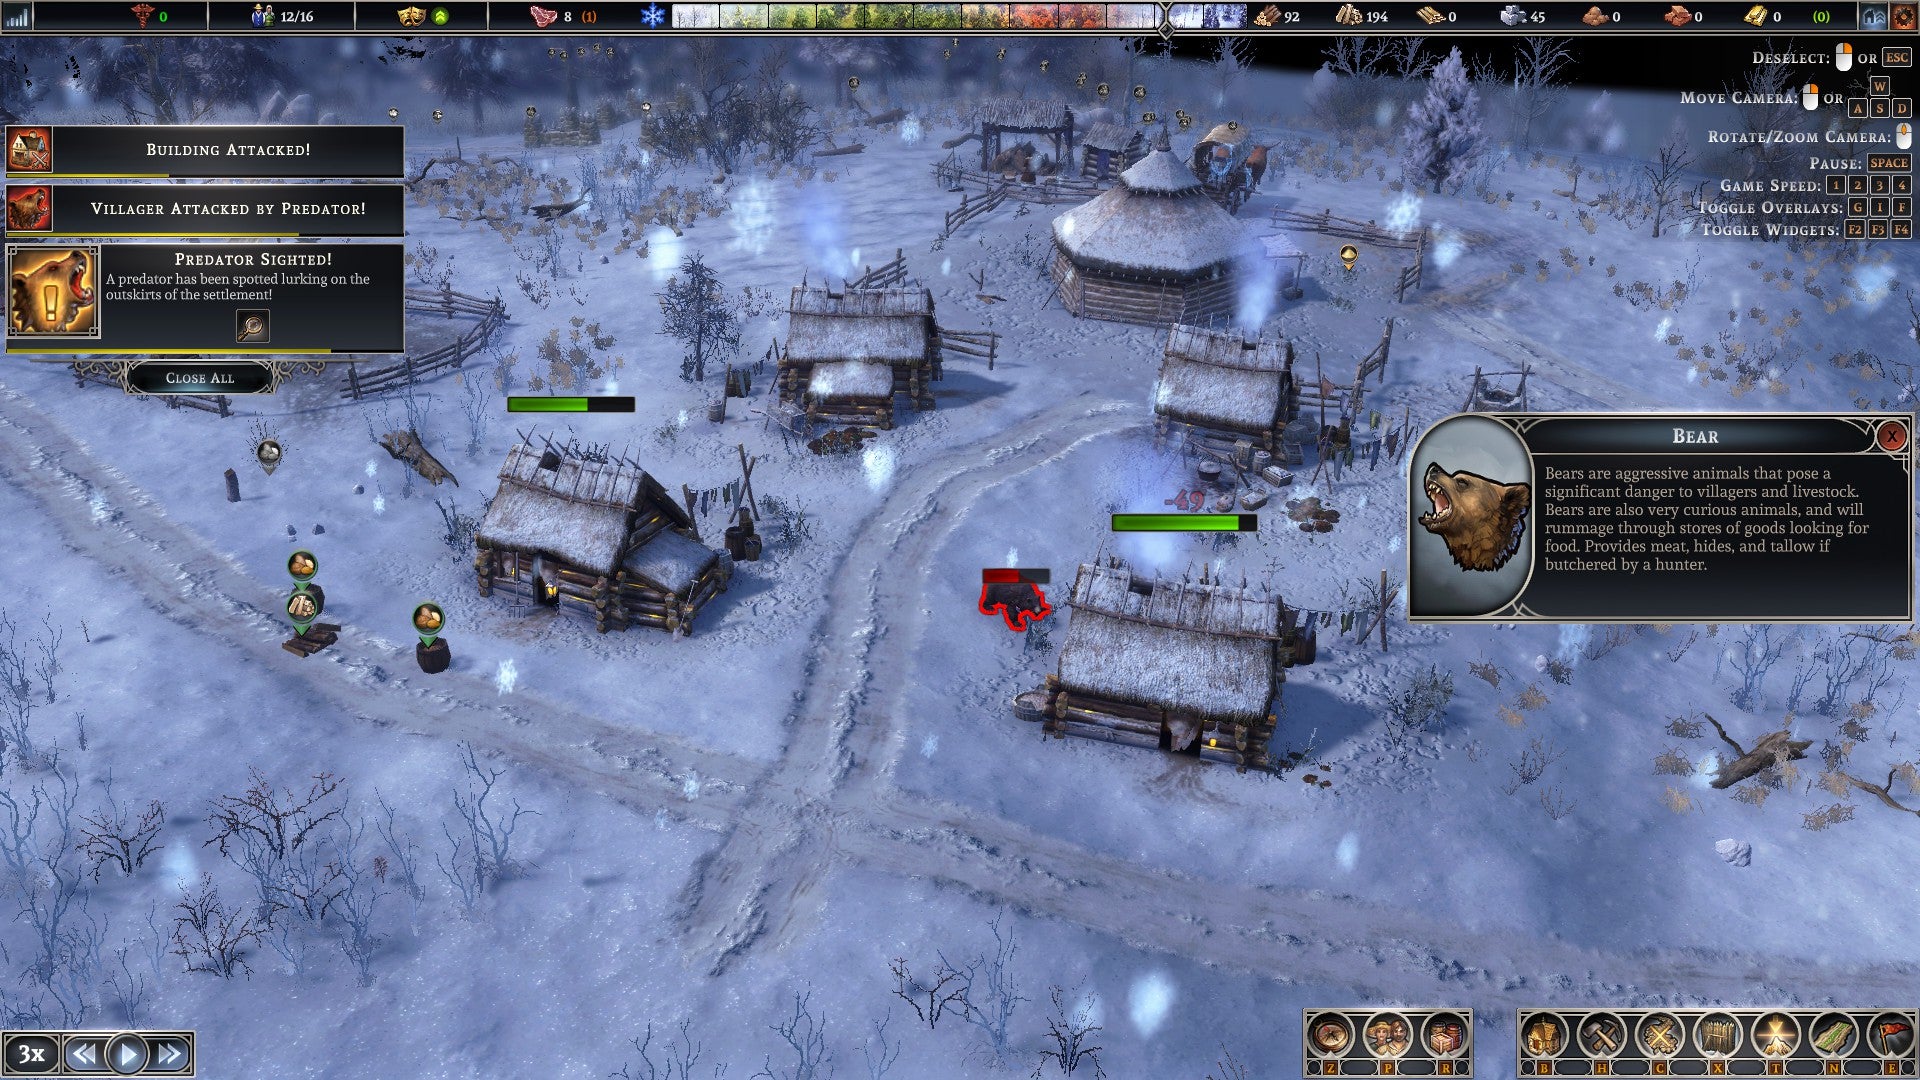 A bear attacks a small, snowed-under village.